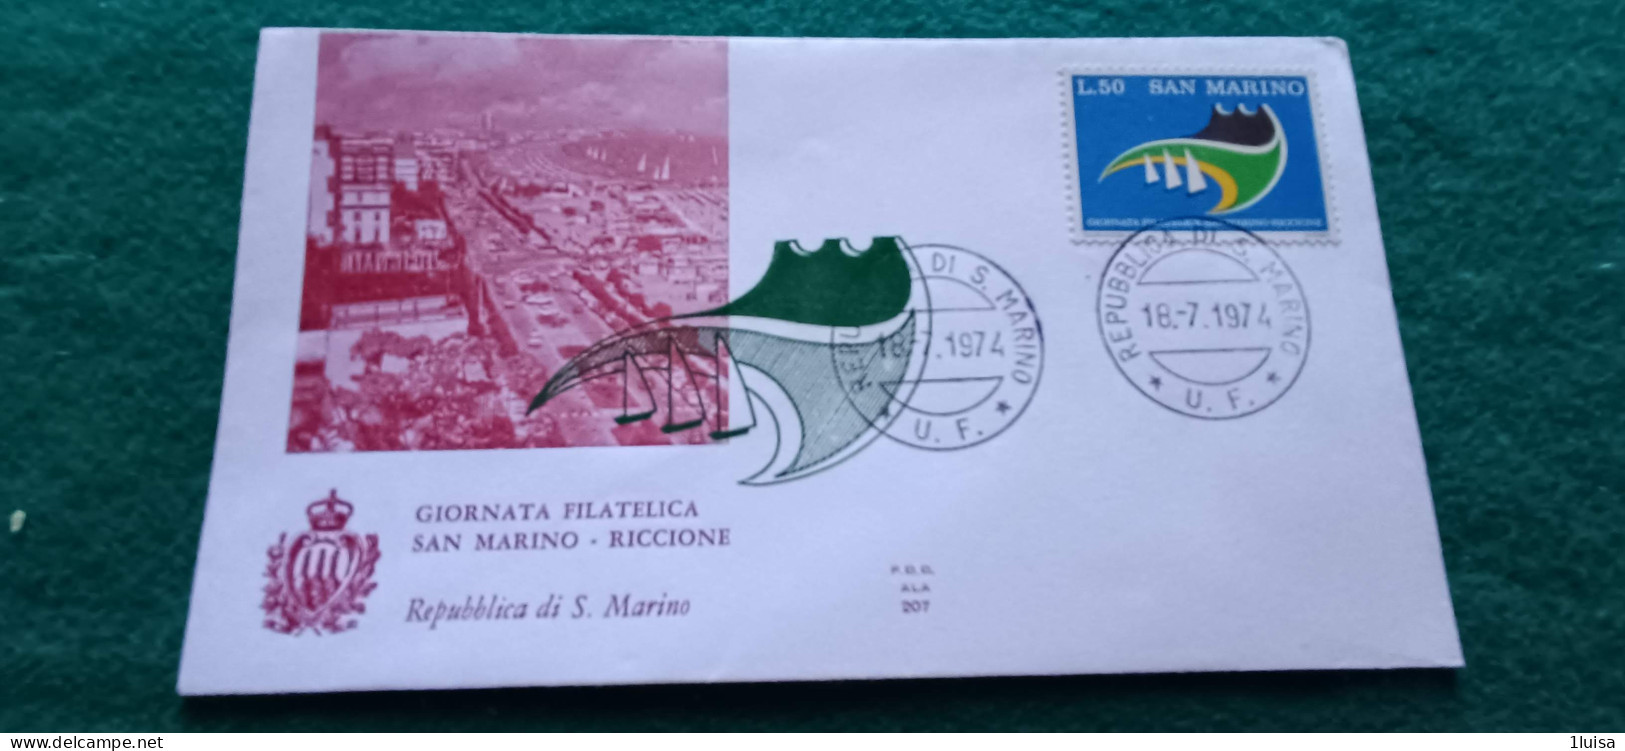 SAN MARINO 18/7/74 Giornata Filatelica San Marino Riccione - Express Letter Stamps